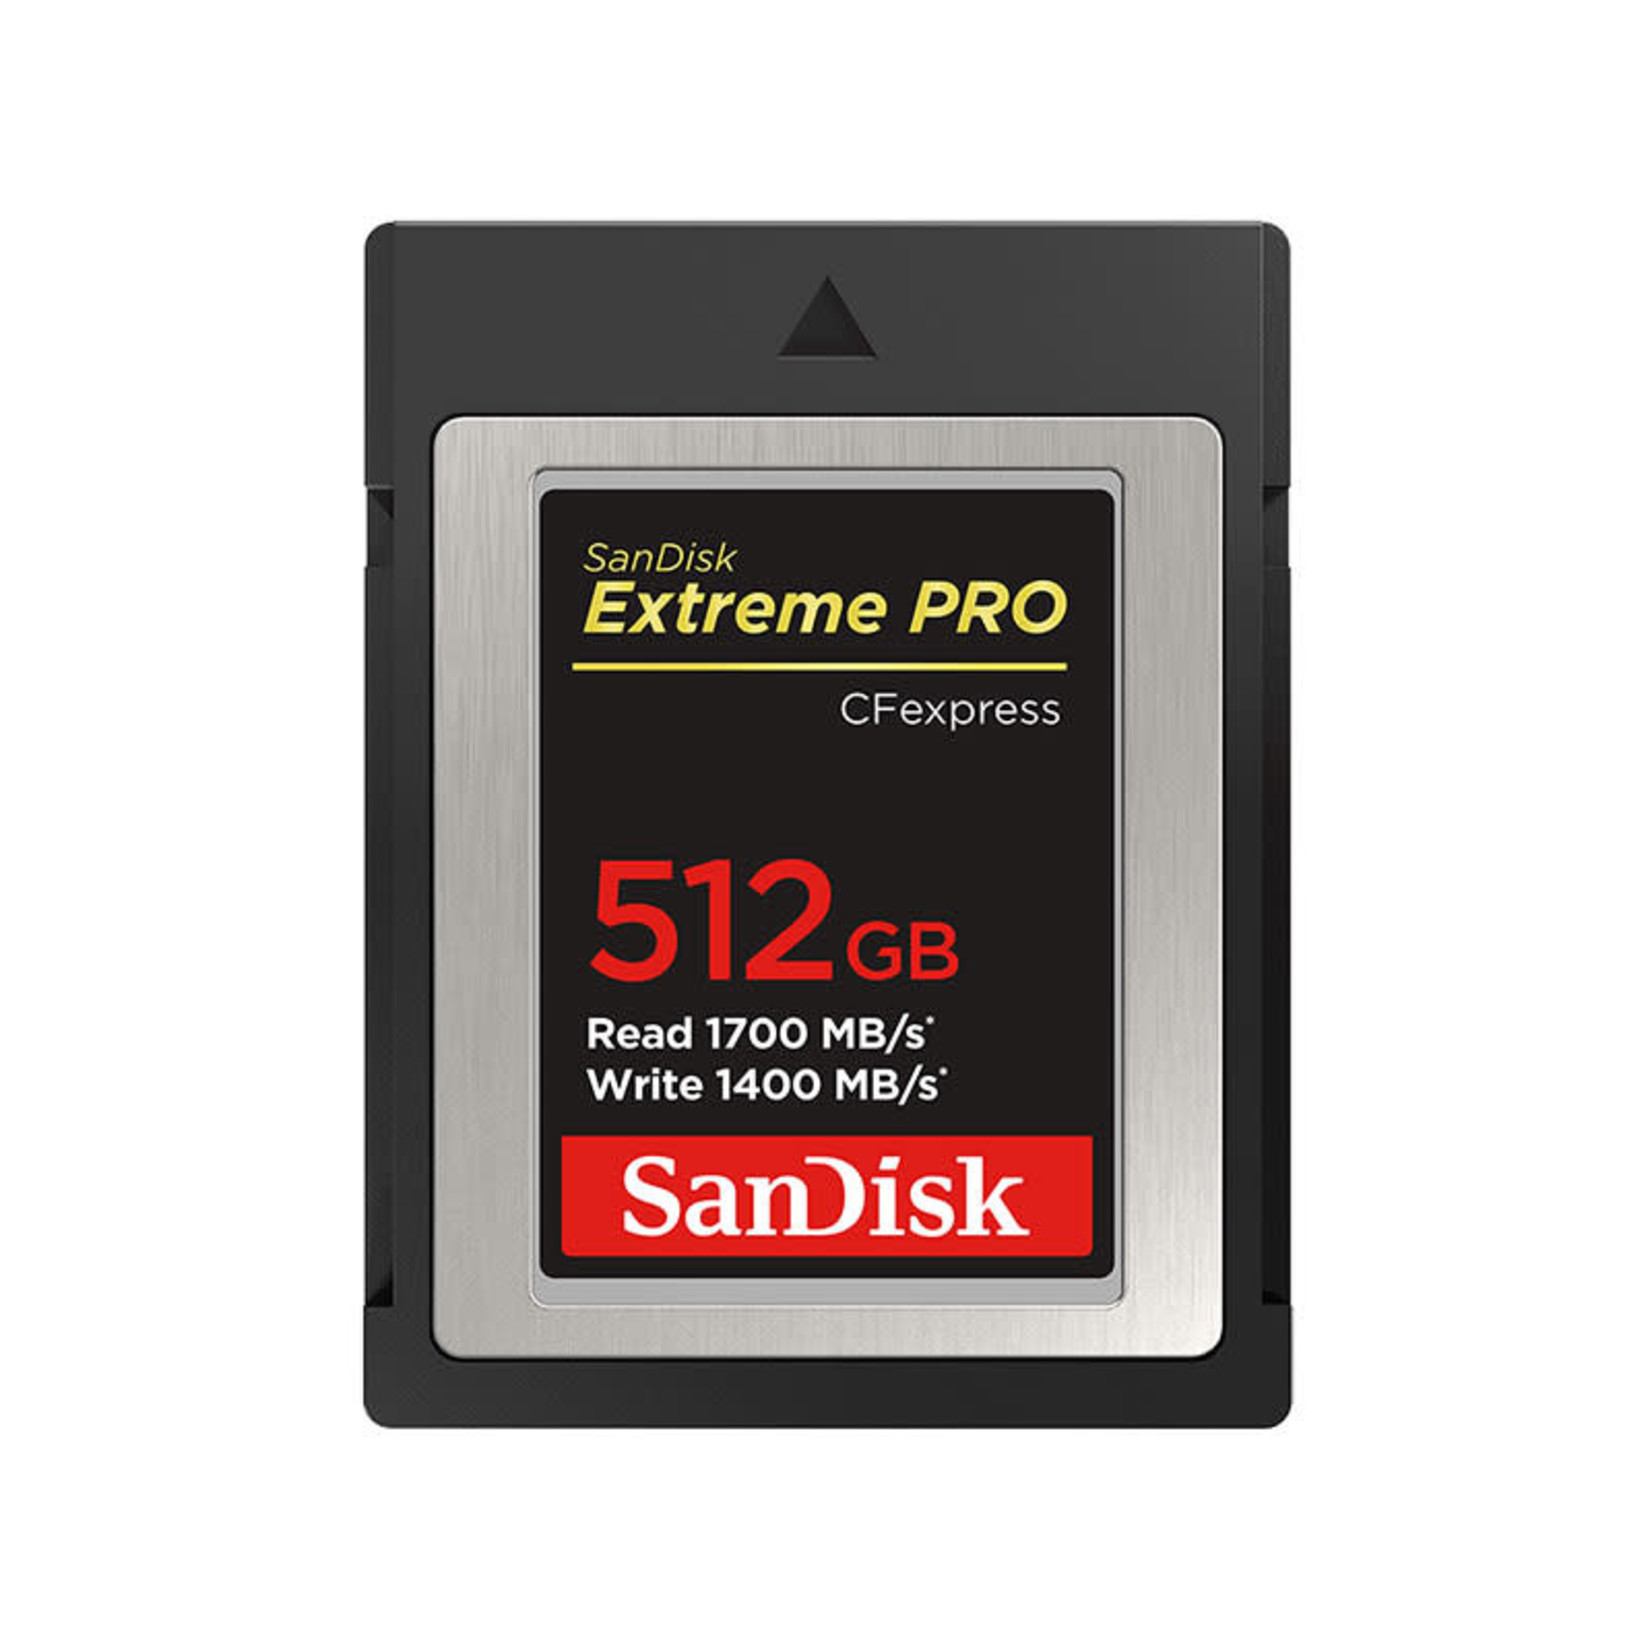 SanDisk SanDisk Extreme Pro CFexpress Card